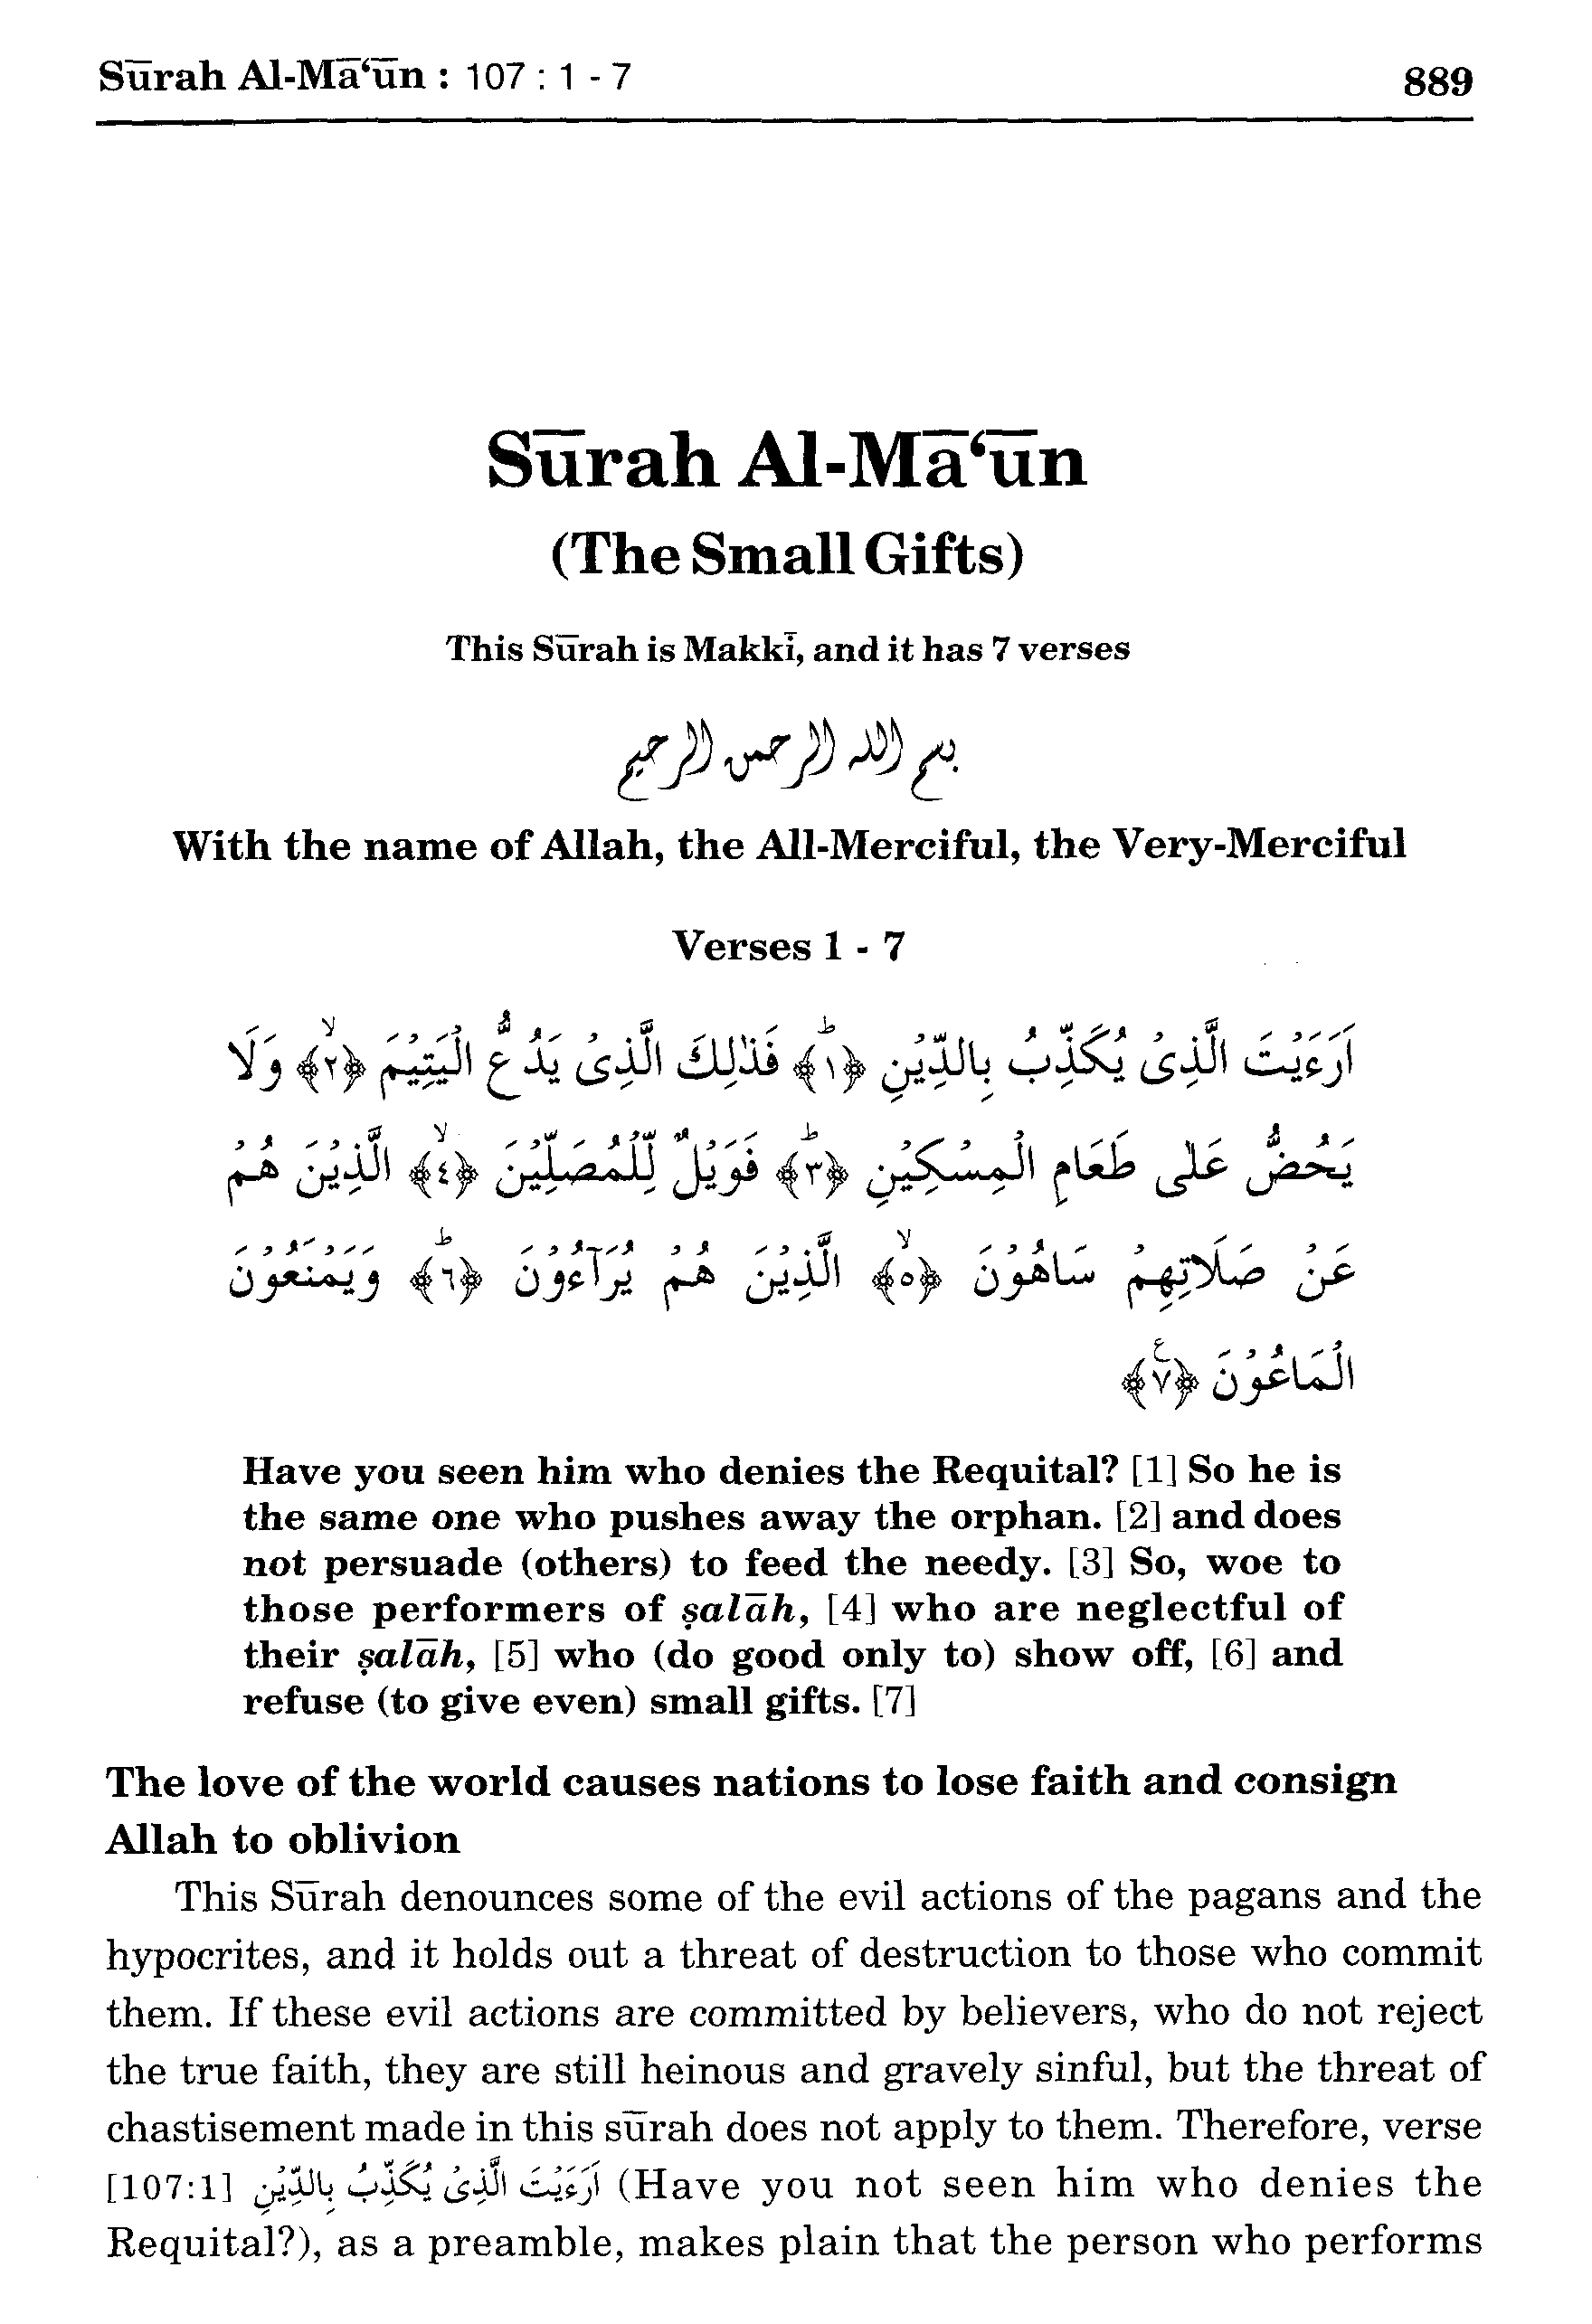 Surah Al-Ma'un 107:1-7 - Maariful Quran - Maarif ul Quran - Quran